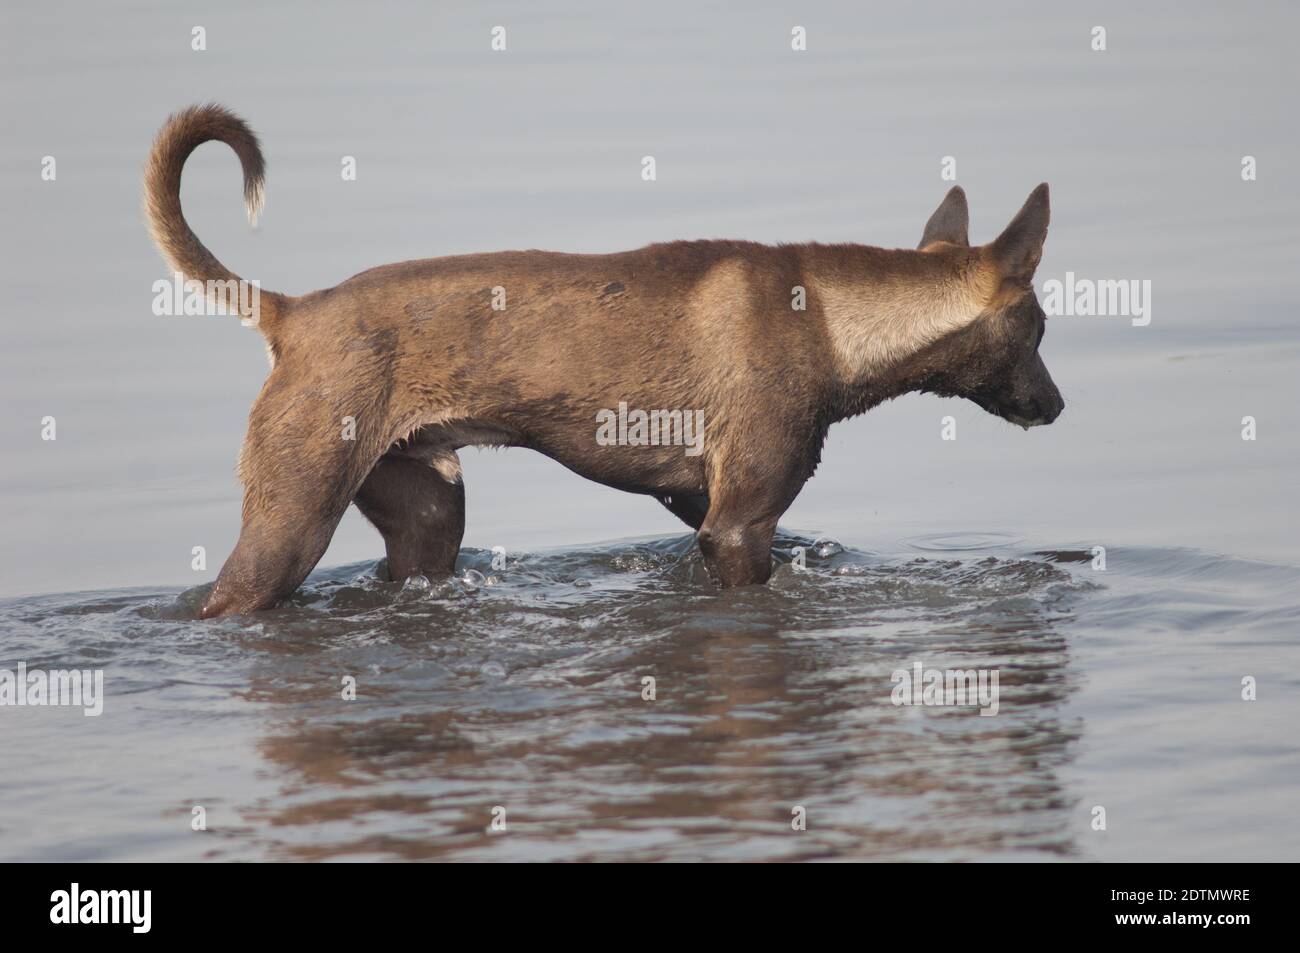 Cane selvaggio Canis lupus familiaris nel fiume Yamuna. Agra. Utttar Pradesh. India. Foto Stock